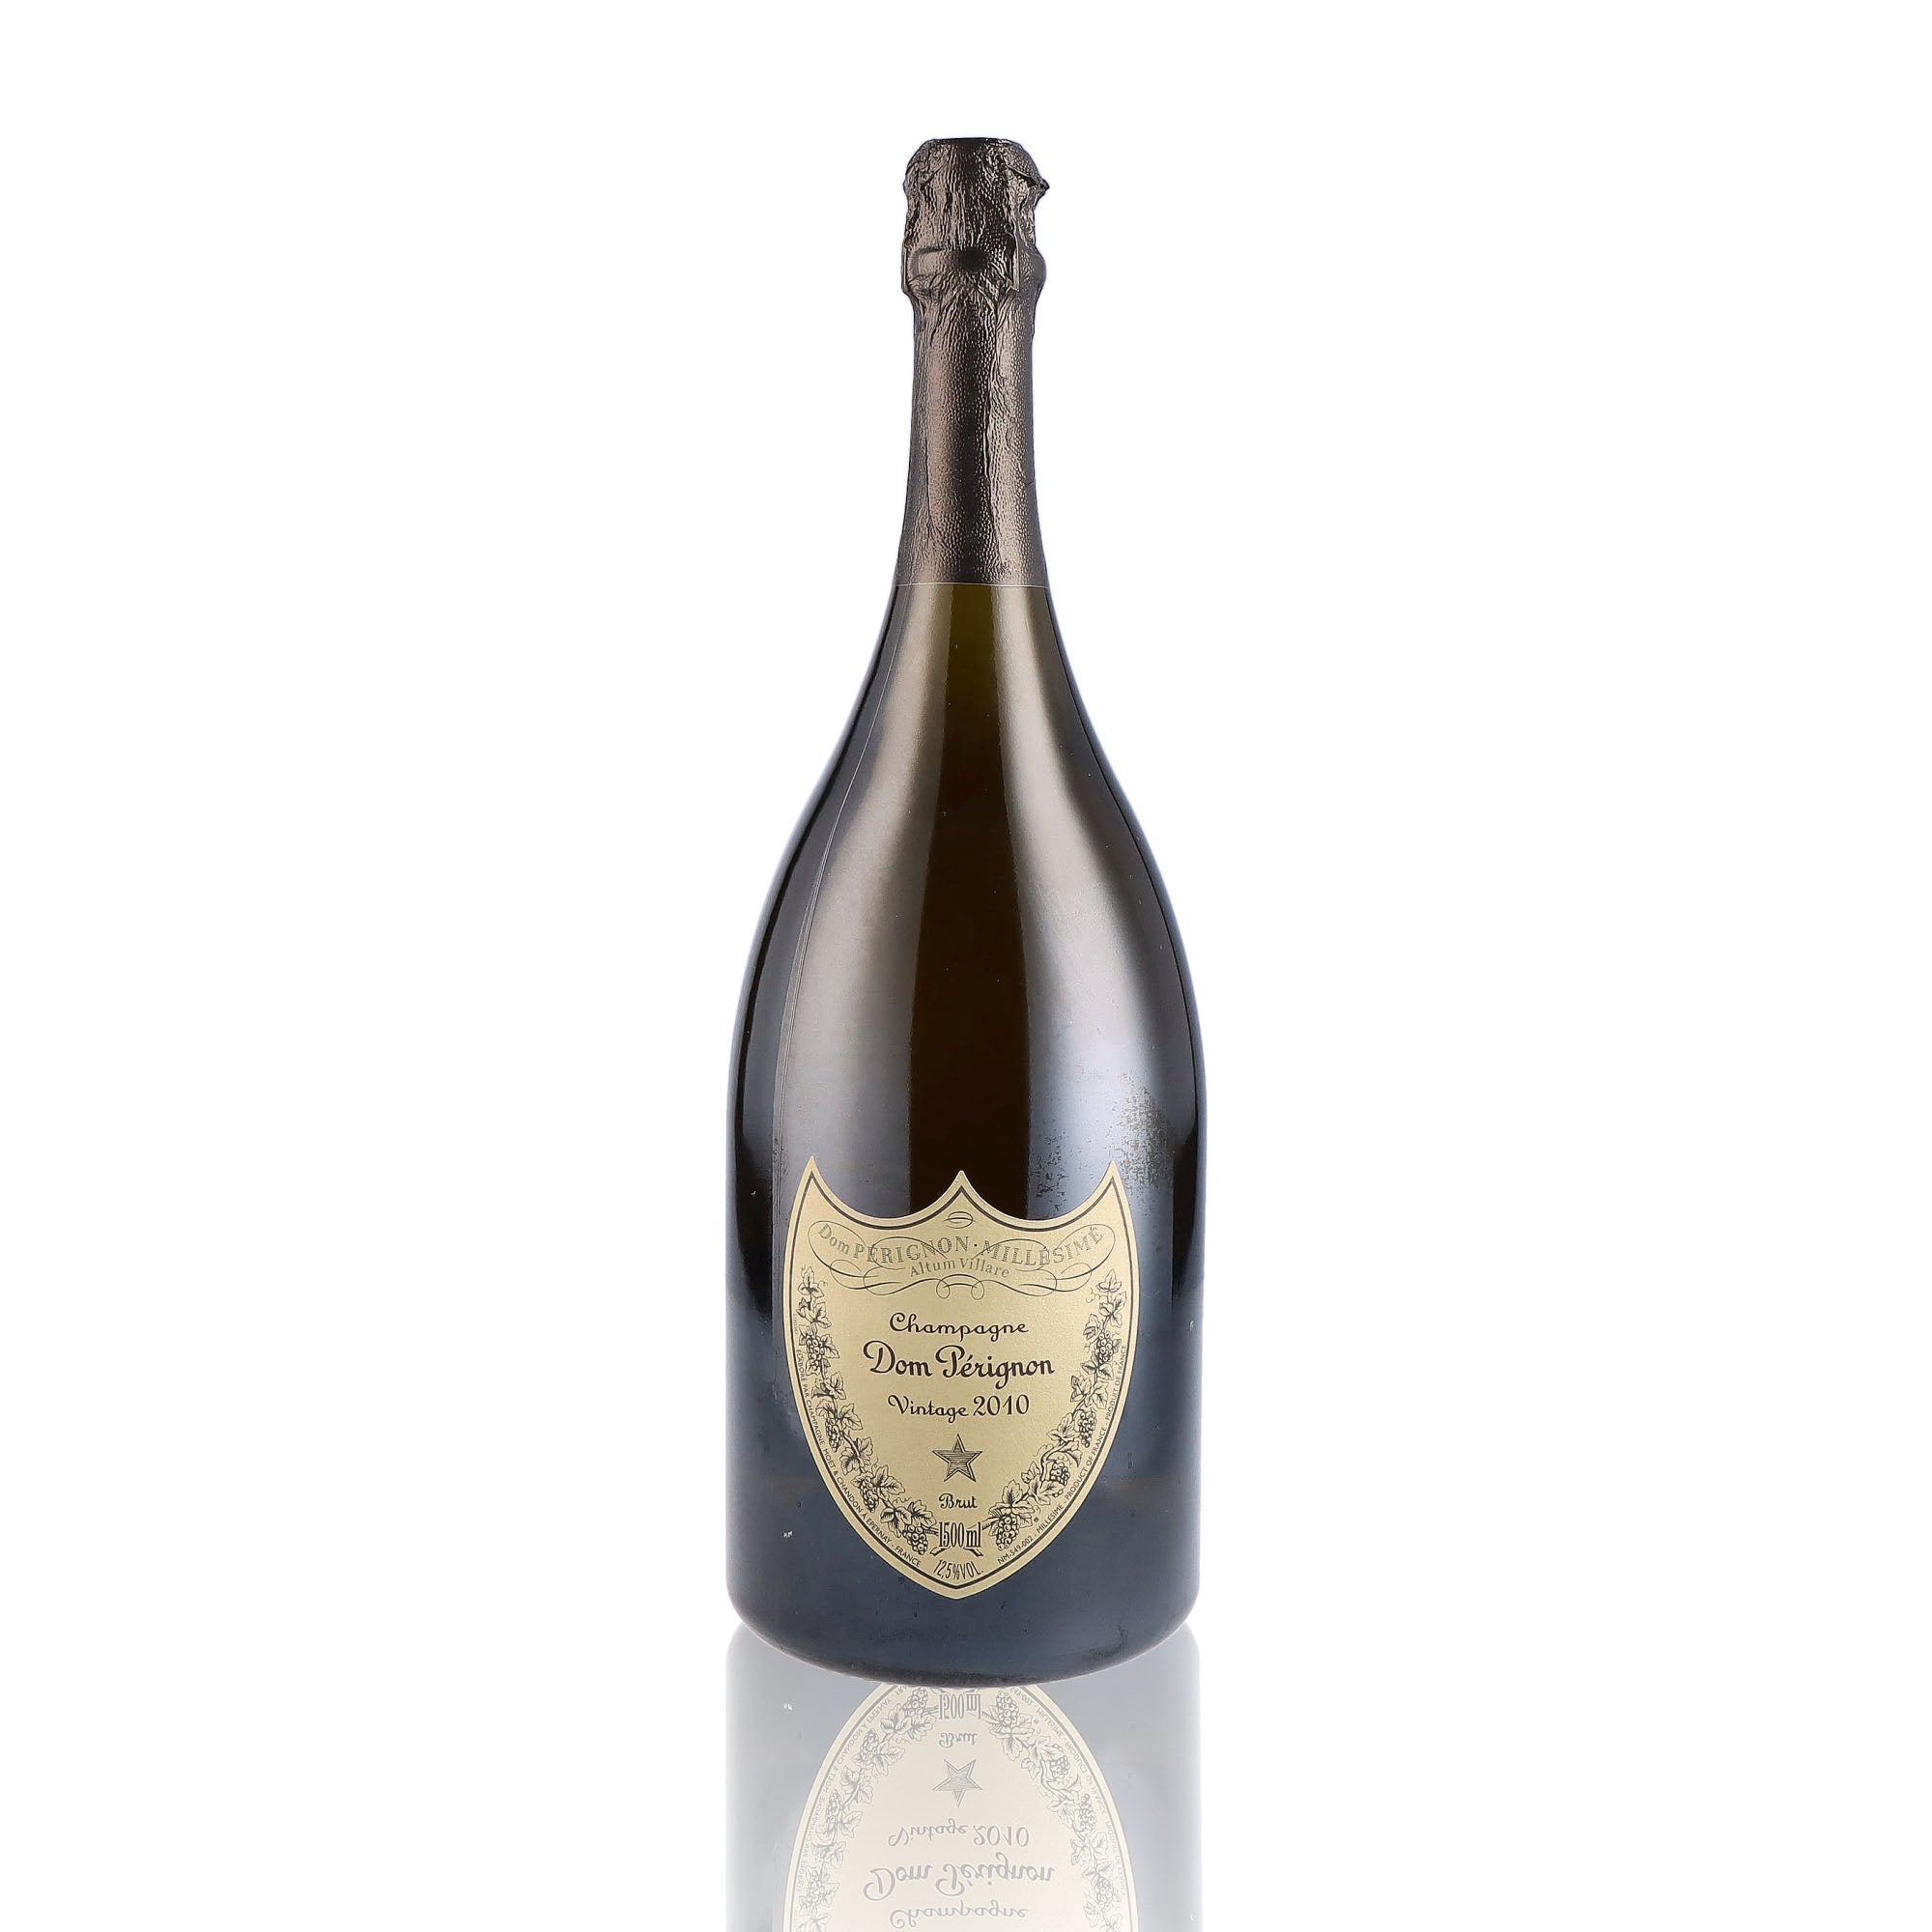 Une bouteille de champagne de la marque Dom Perignon, de type brut, millésime 2010, en version magnum.